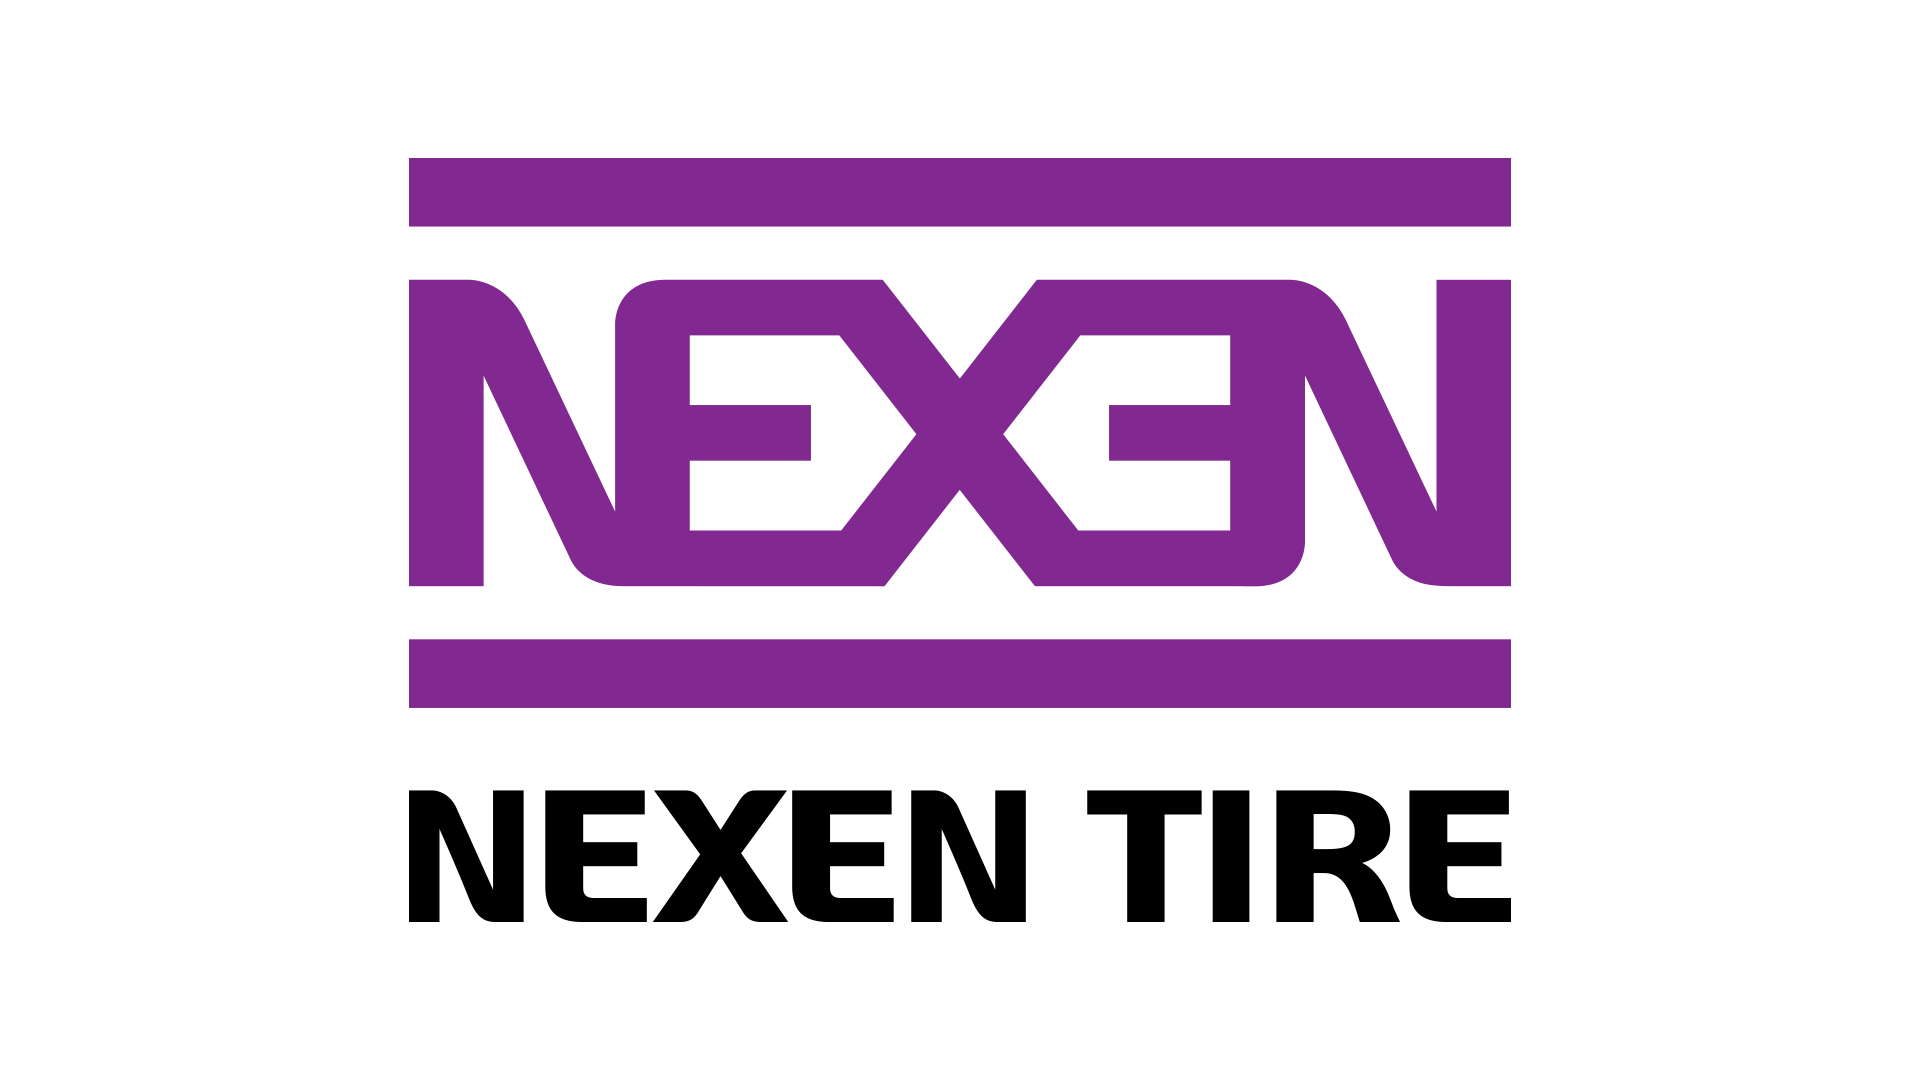 Nexen-logo